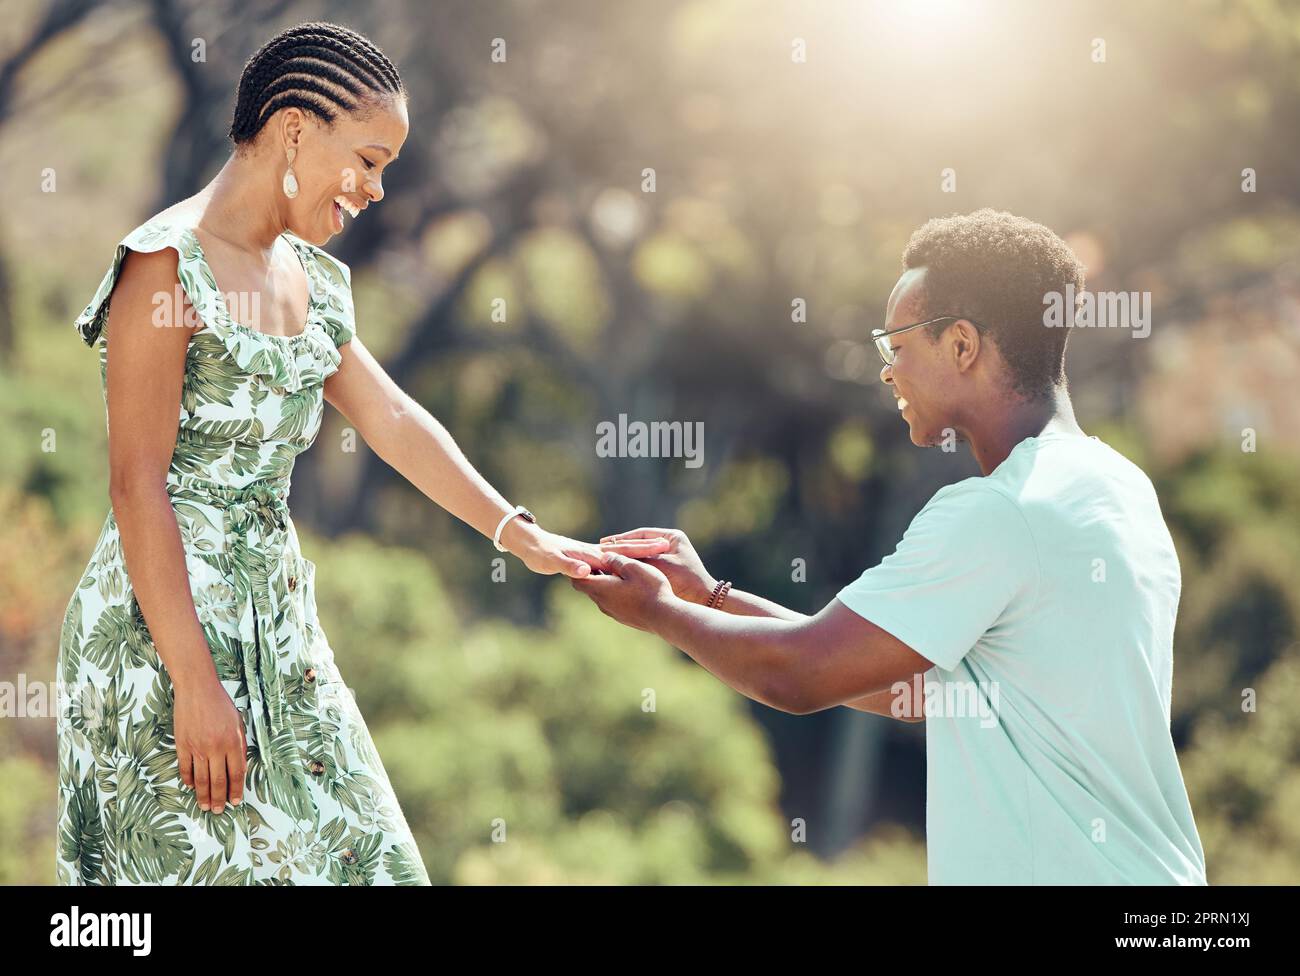 Liebe, Verlobung und schwarzer Mann machen ihrer Freundin einen Heiratsantrag, bei einem romantischen Date draußen, glücklich und aufgeregt. Eine afrikanische Frau überrascht mit einer süßen Geste und genießt einen besonderen Beziehungsmoment bei einem gemeinsamen Date im Freien Stockfoto